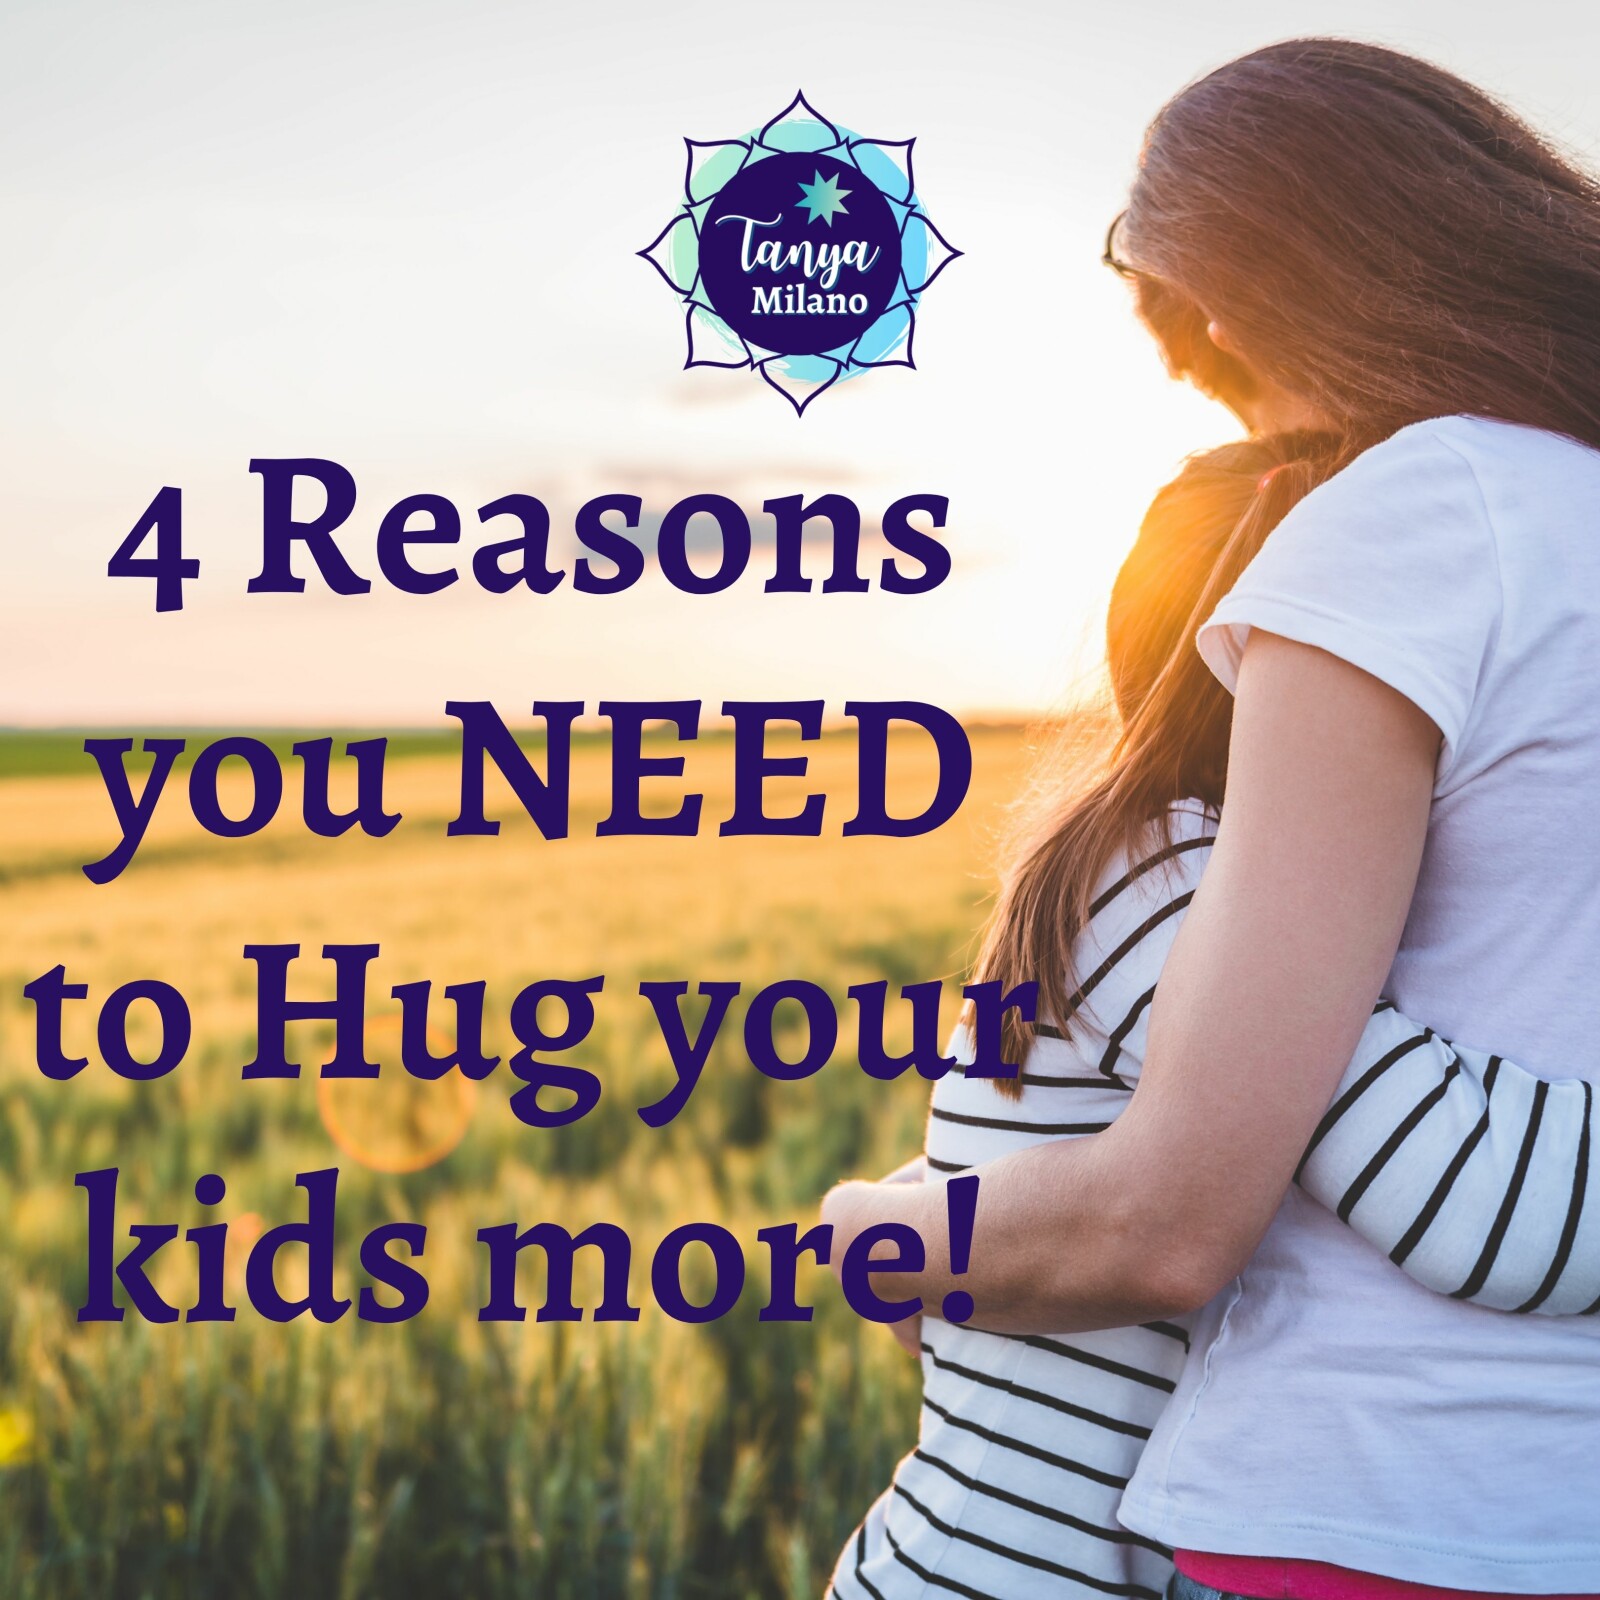 4 Reasons you NEED to hug your kids more!